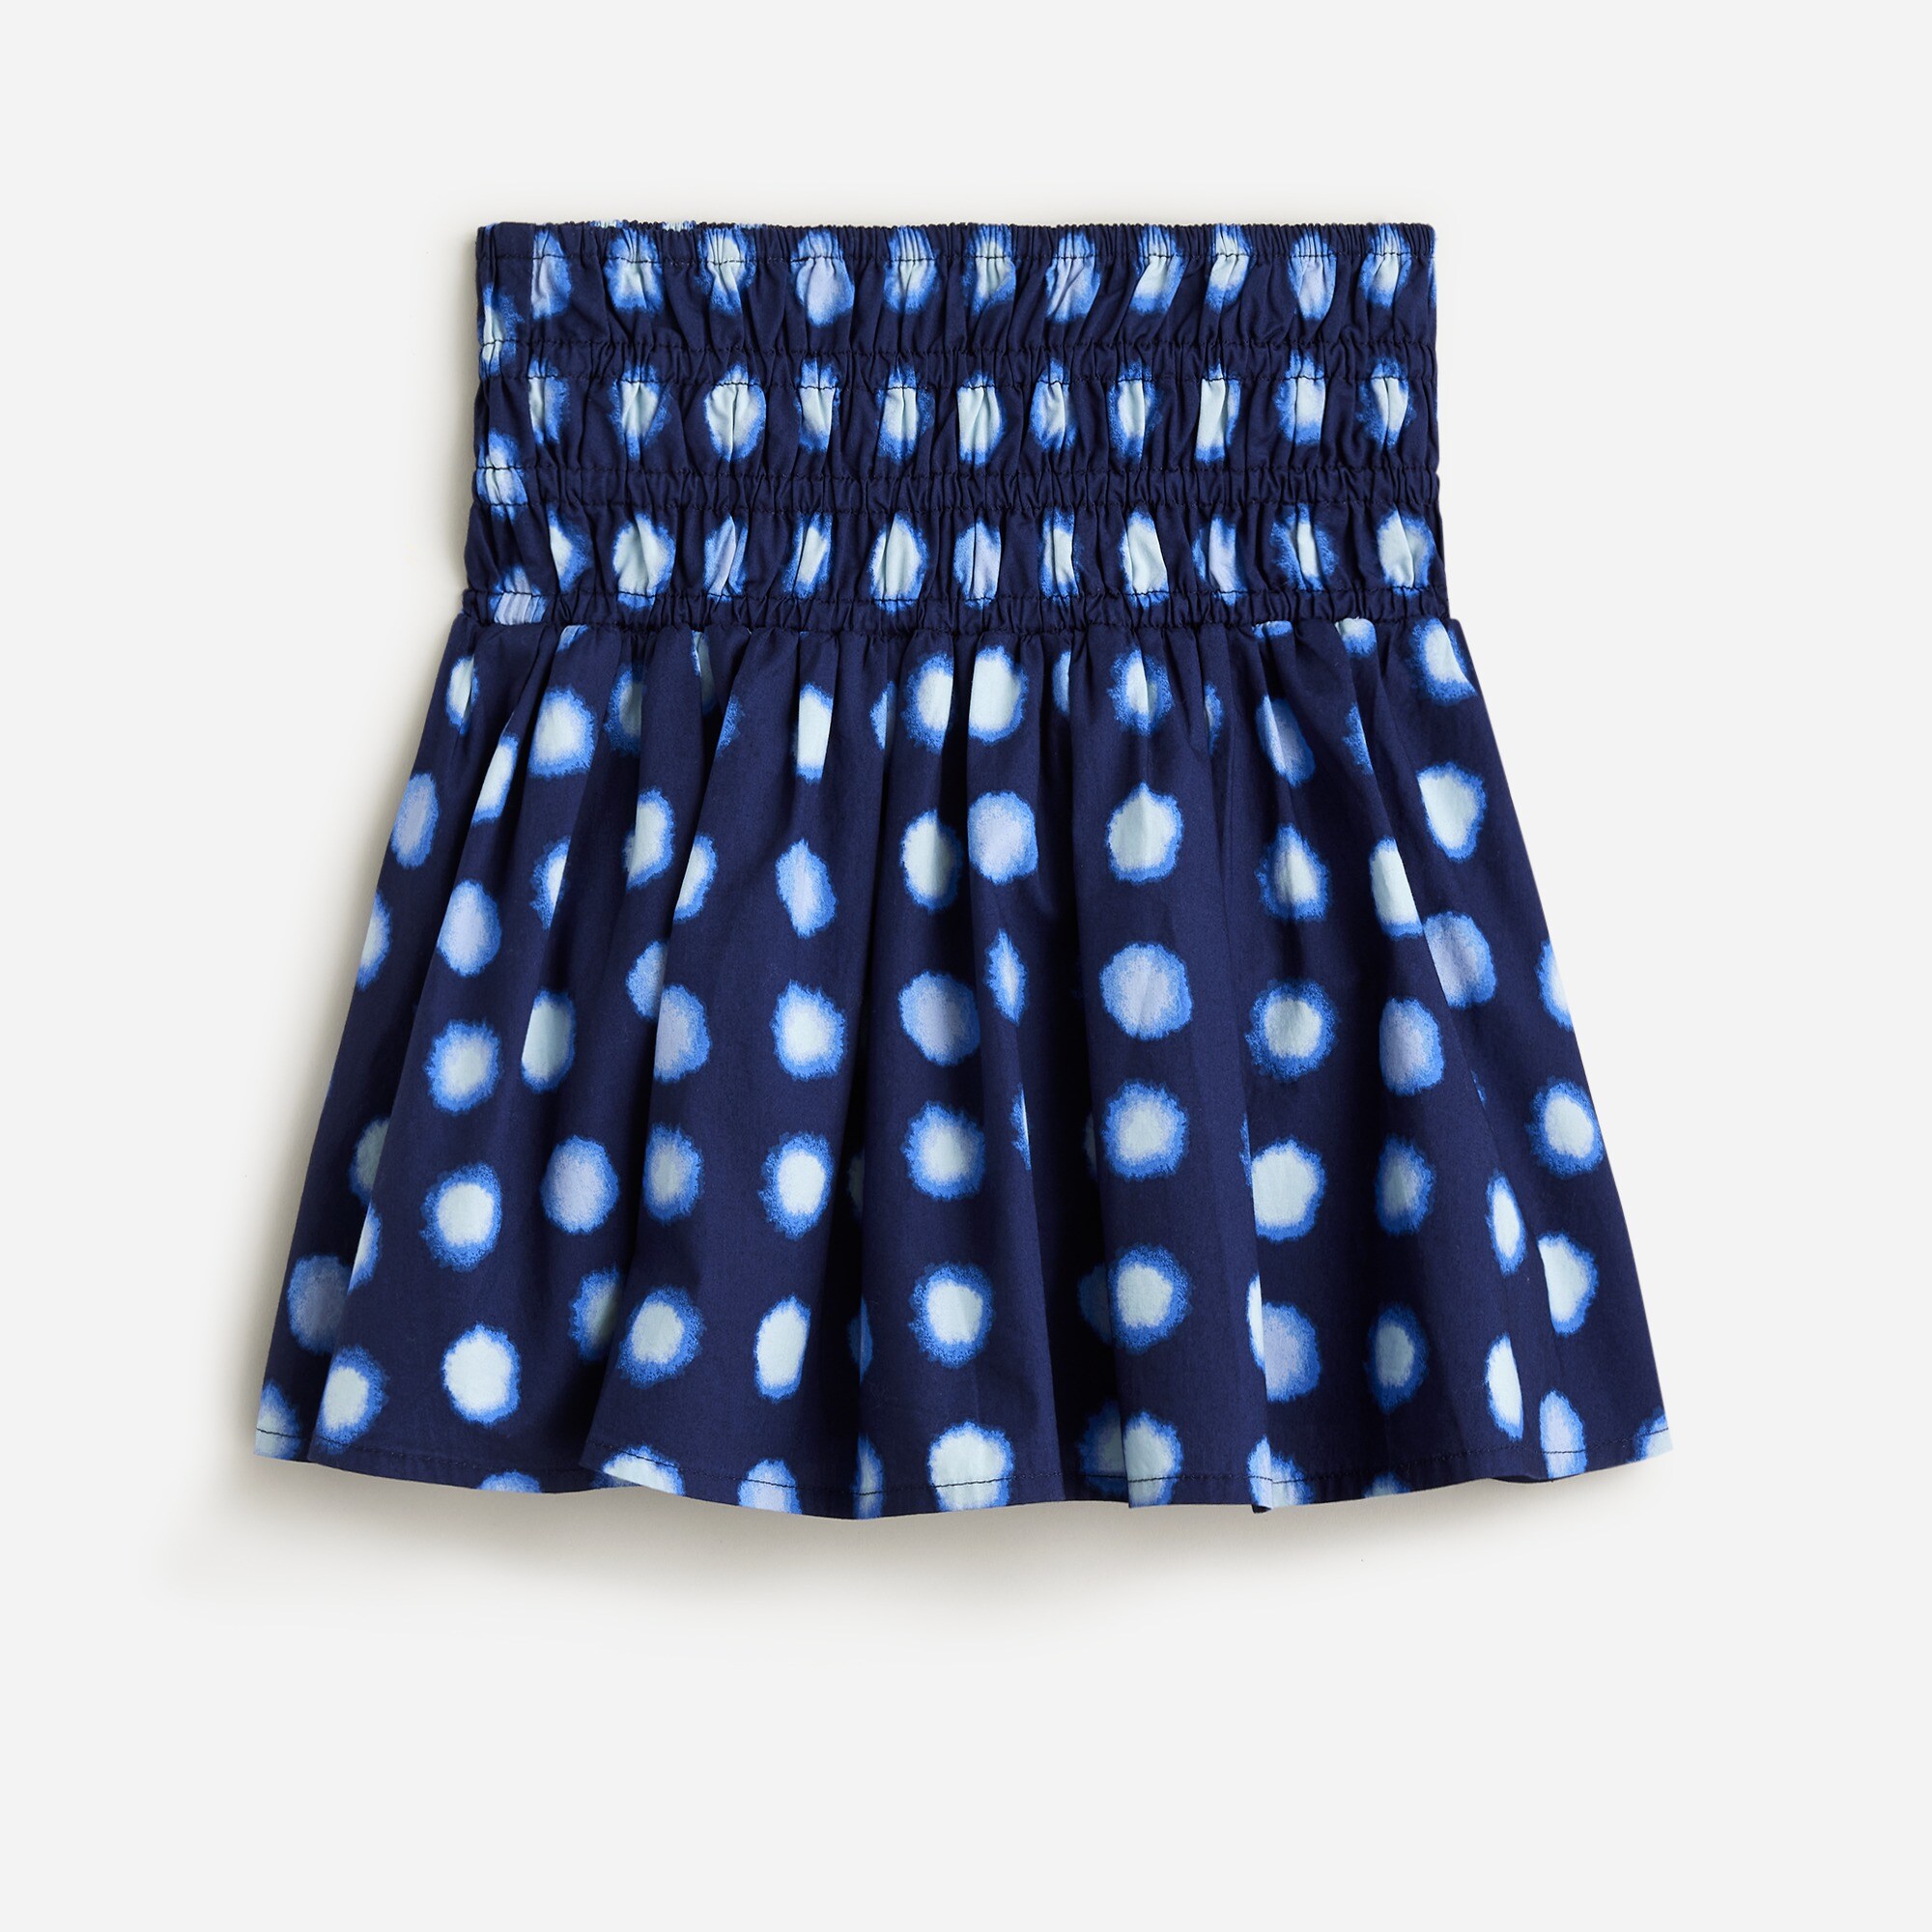  Girls' smocked skirt in shibori print